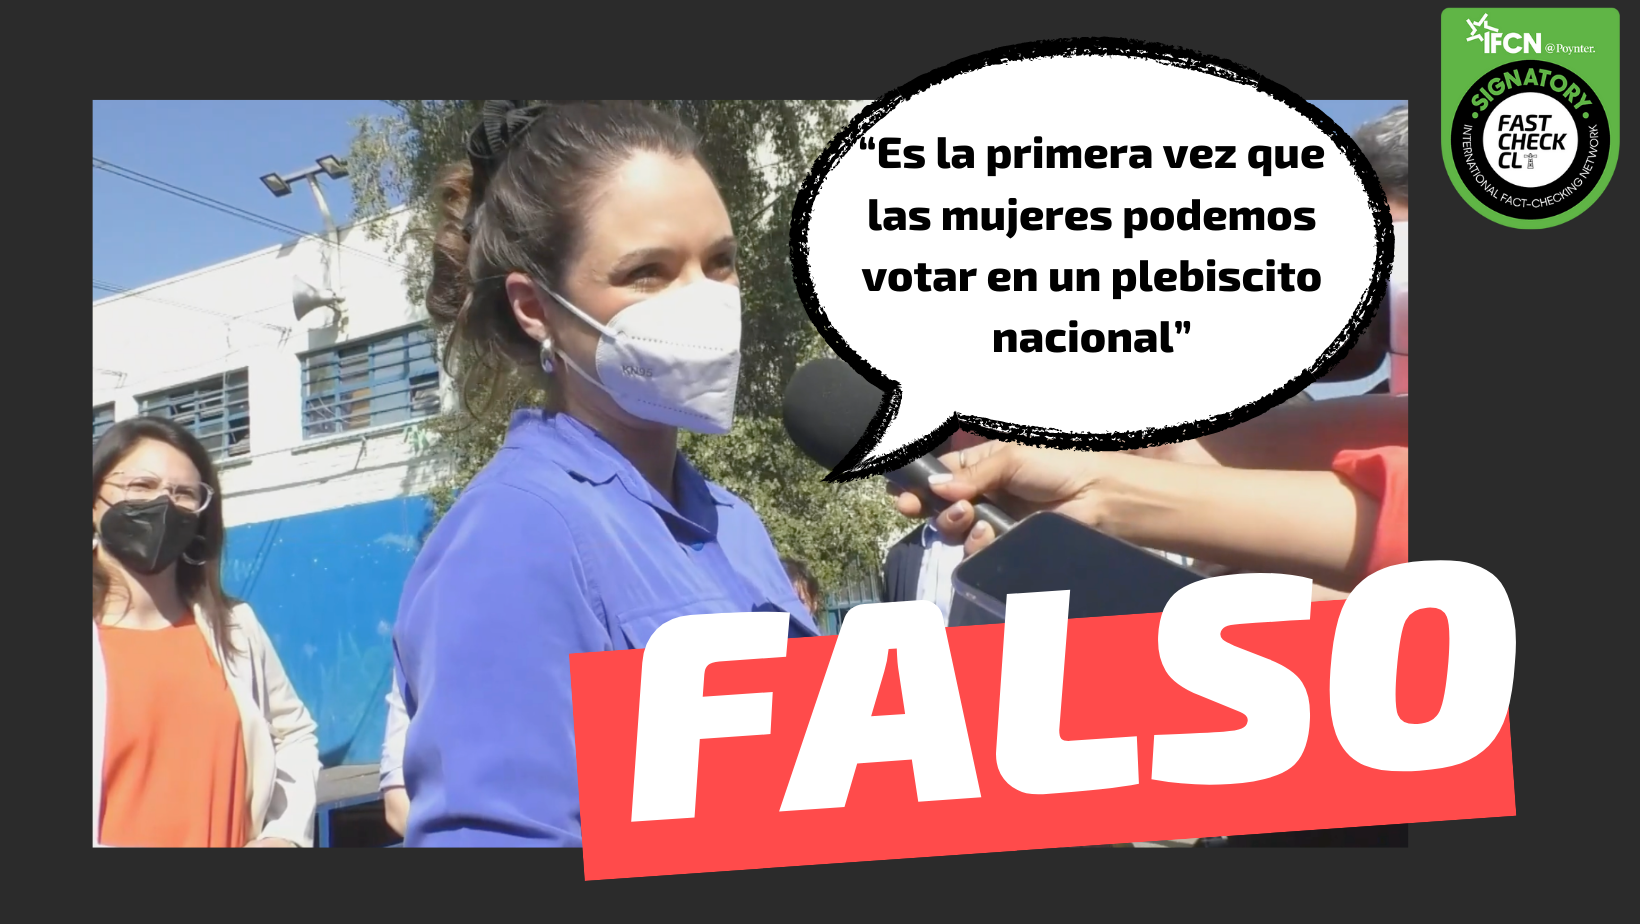 You are currently viewing “Es la primera vez que las mujeres podemos votar en un plebiscito nacional”: #Falso